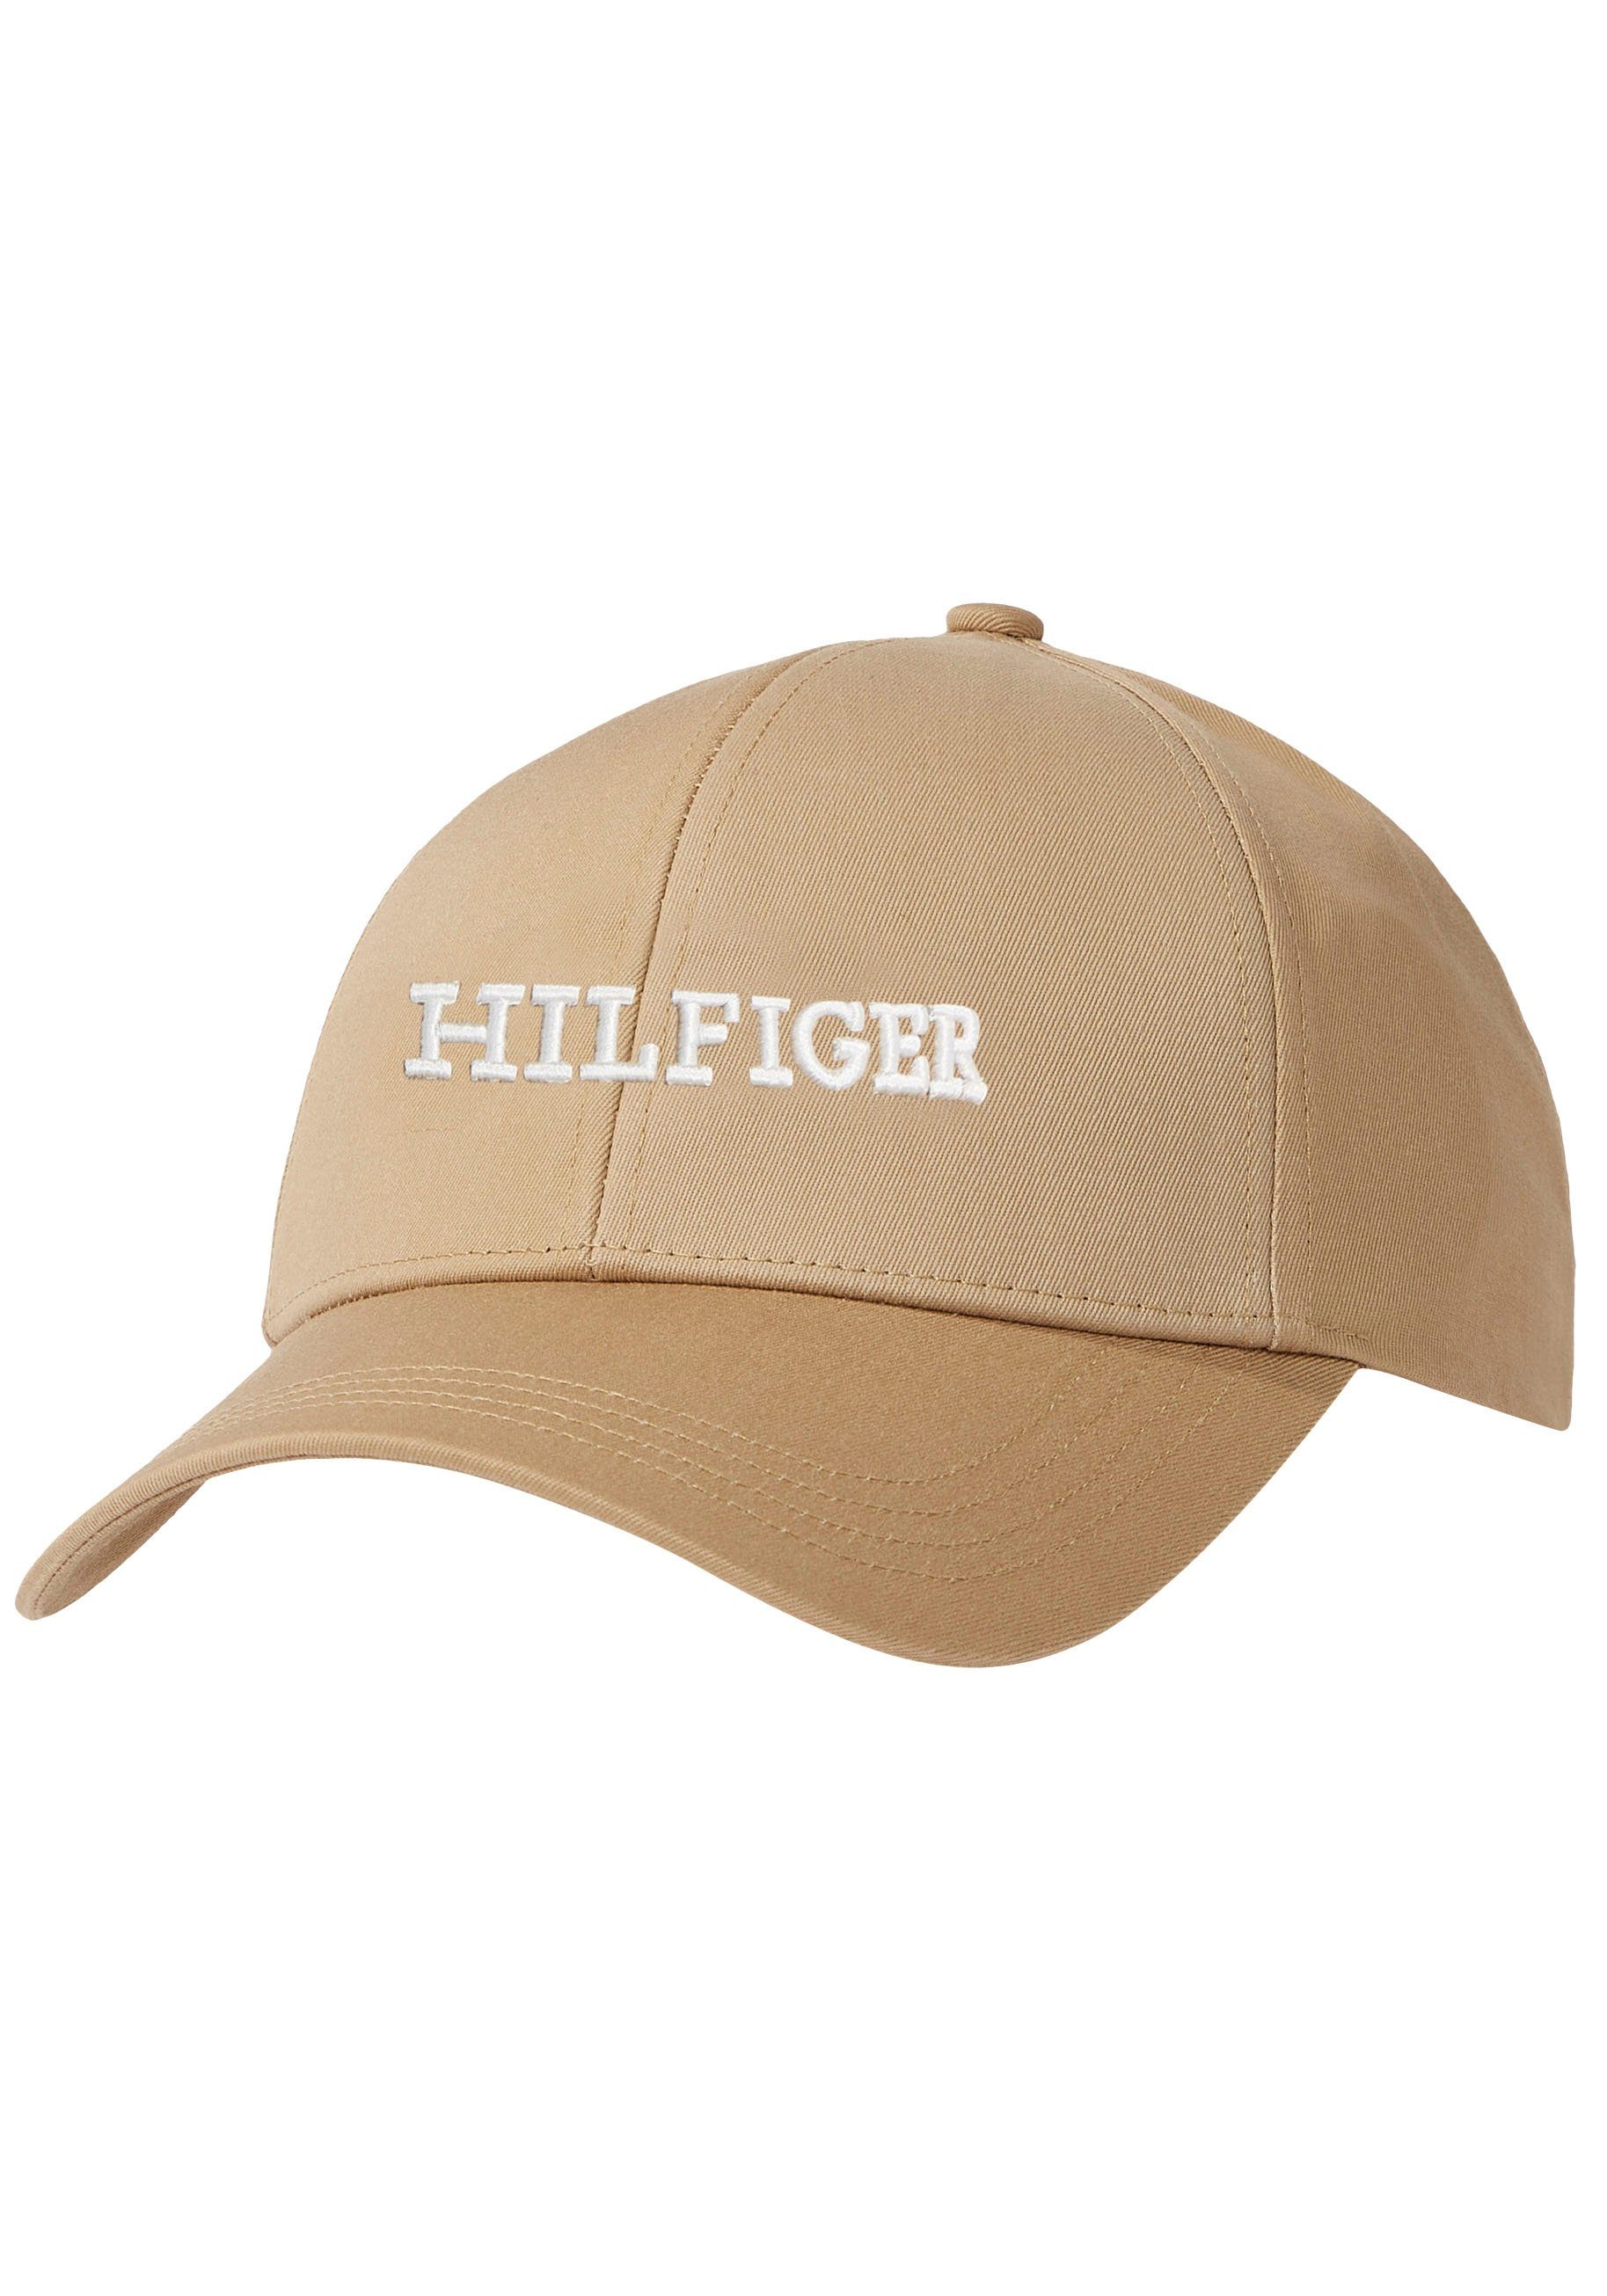 Monogramm vorn Tommy HILFIGER gesticktem Hilfiger Baseball mit Hilfiger CAP Cap